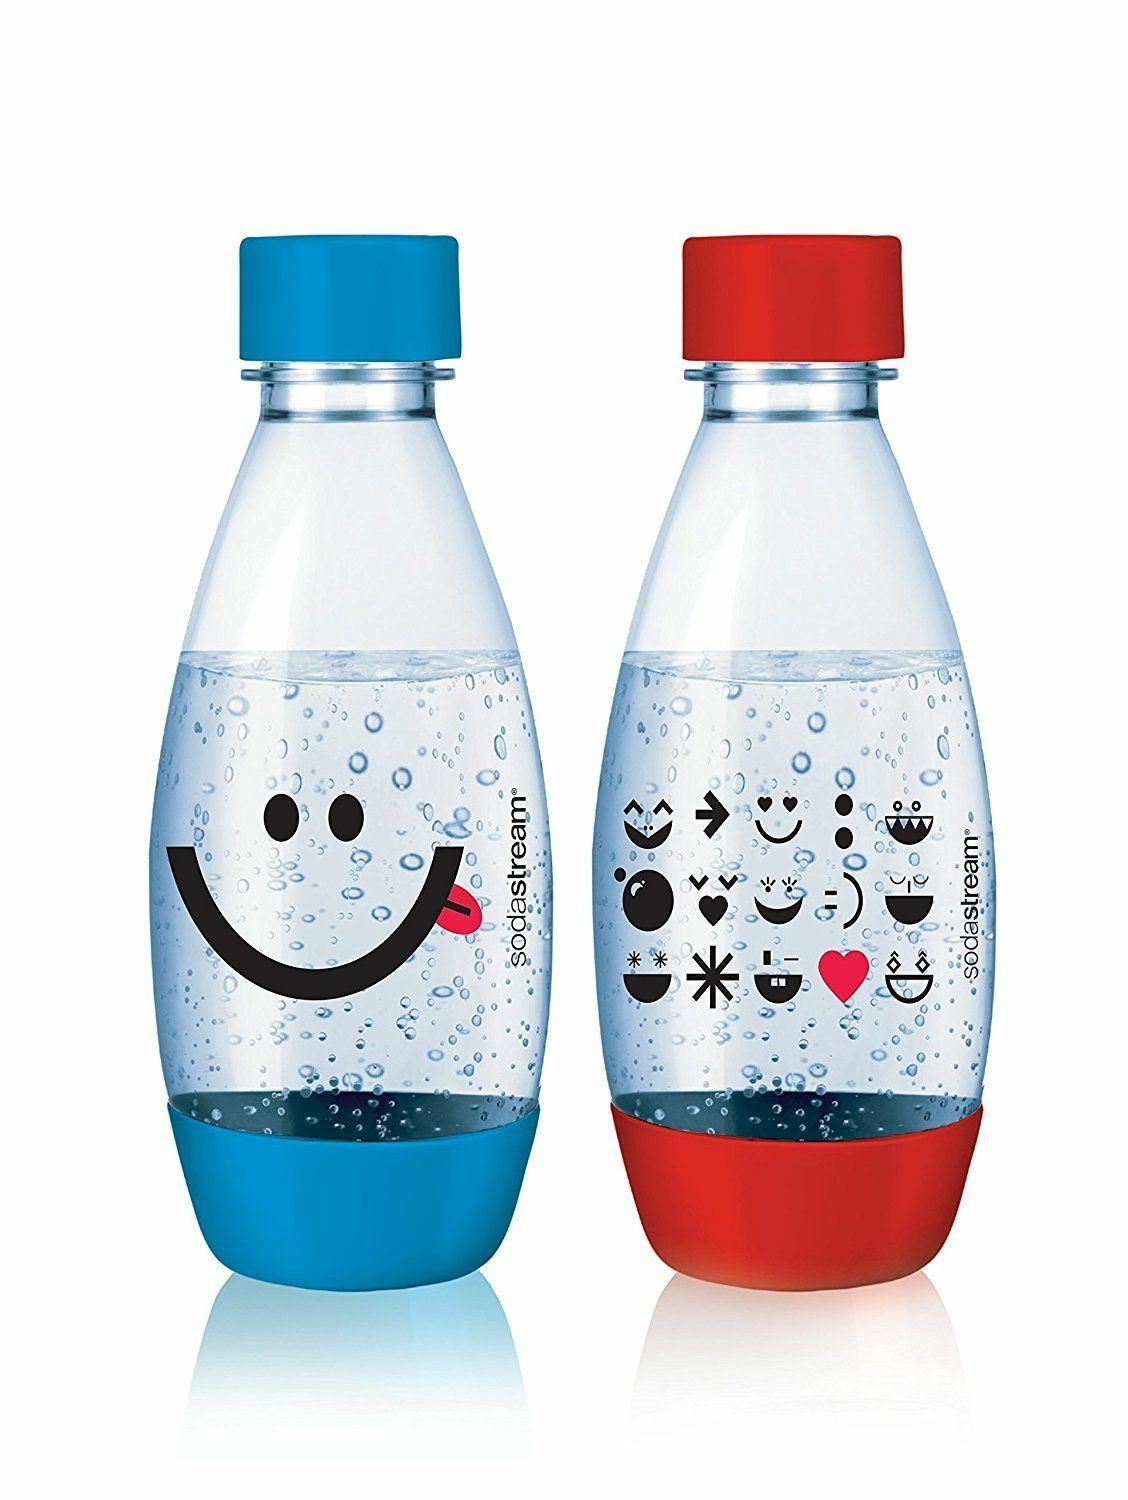 זוג בקבוקים לילדים חצי ליטר סודה סטרים - אדום וכחול